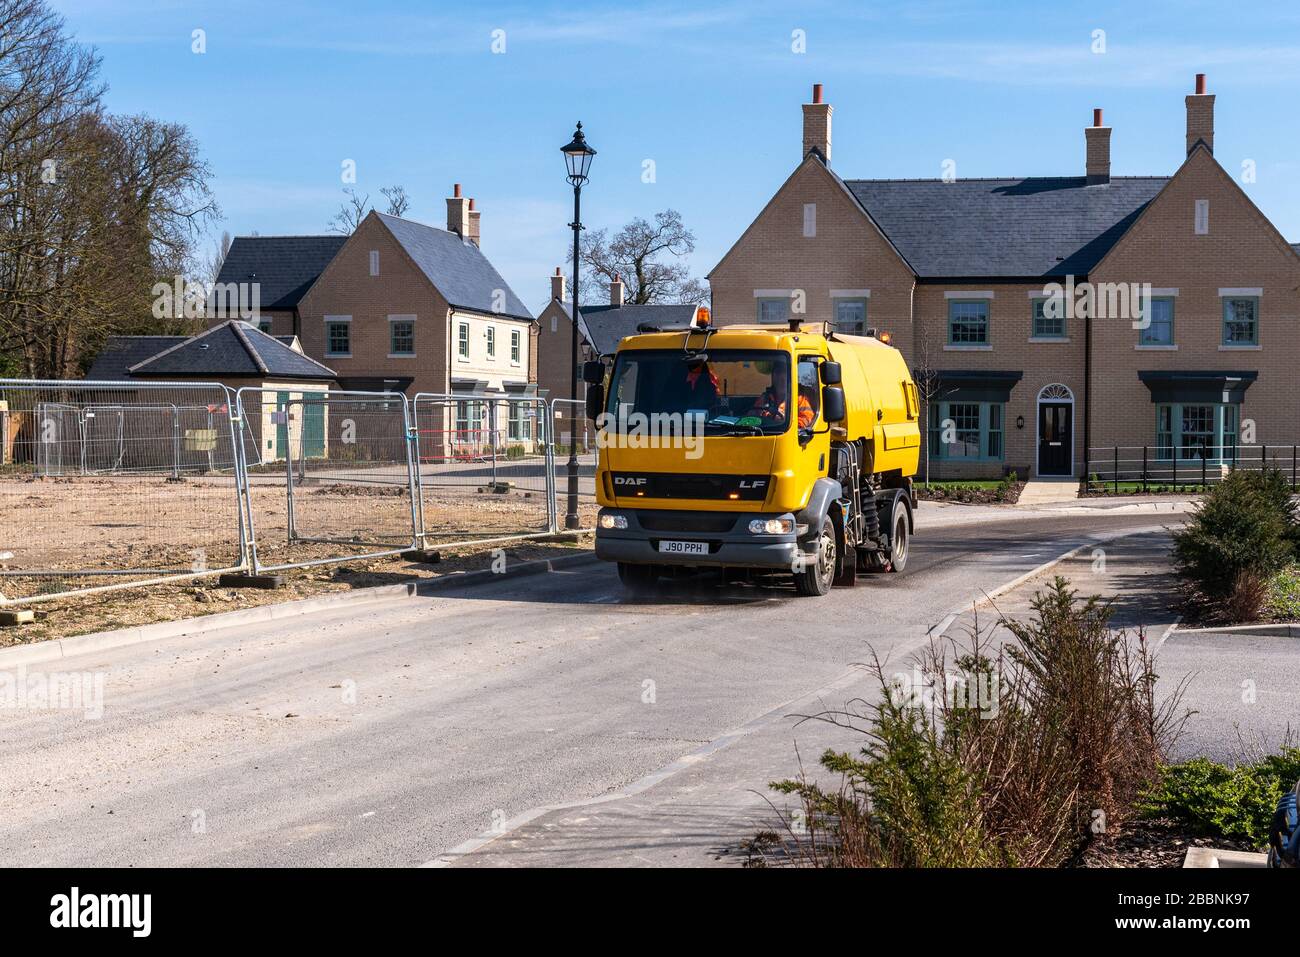 Los trabajadores de la construcción continúan construyendo viviendas durante el cierre de Covid-19 en el Reino Unido en el nuevo desarrollo de viviendas que se está construyendo en el antiguo emplazamiento de RAF Brampton, Brampton Park. Brampton, Cambridgeshire, Reino Unido. Foto de stock